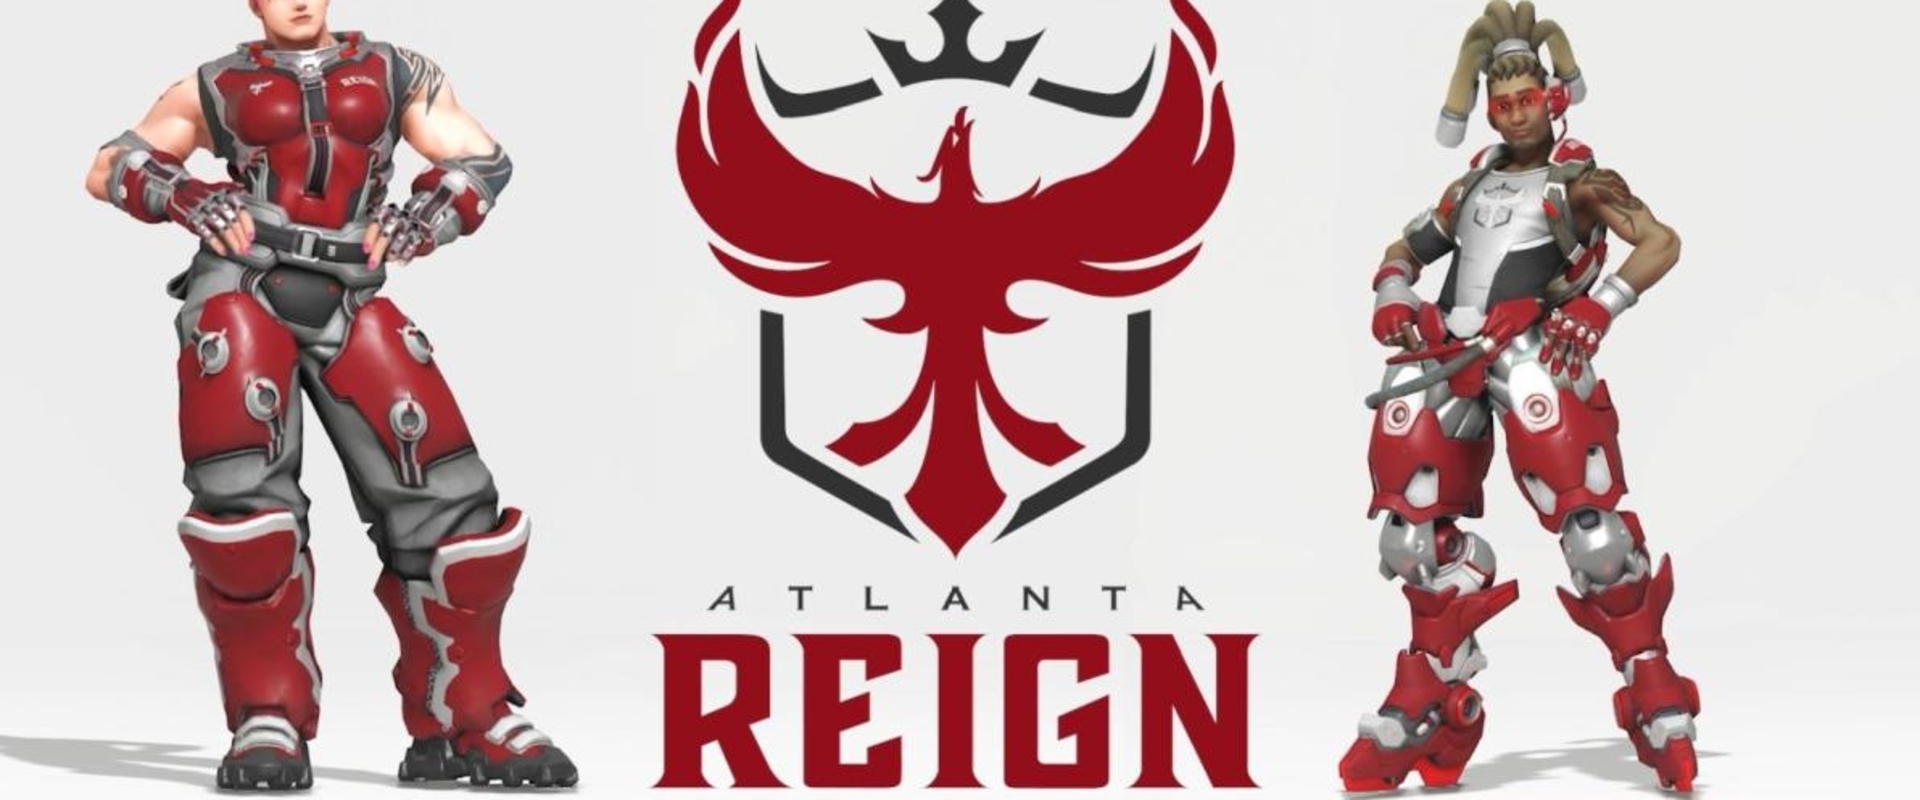 Dafran ismét besokallt: letörölte az OW-t és felbontotta szerződését az Atlanta Reign-nel!